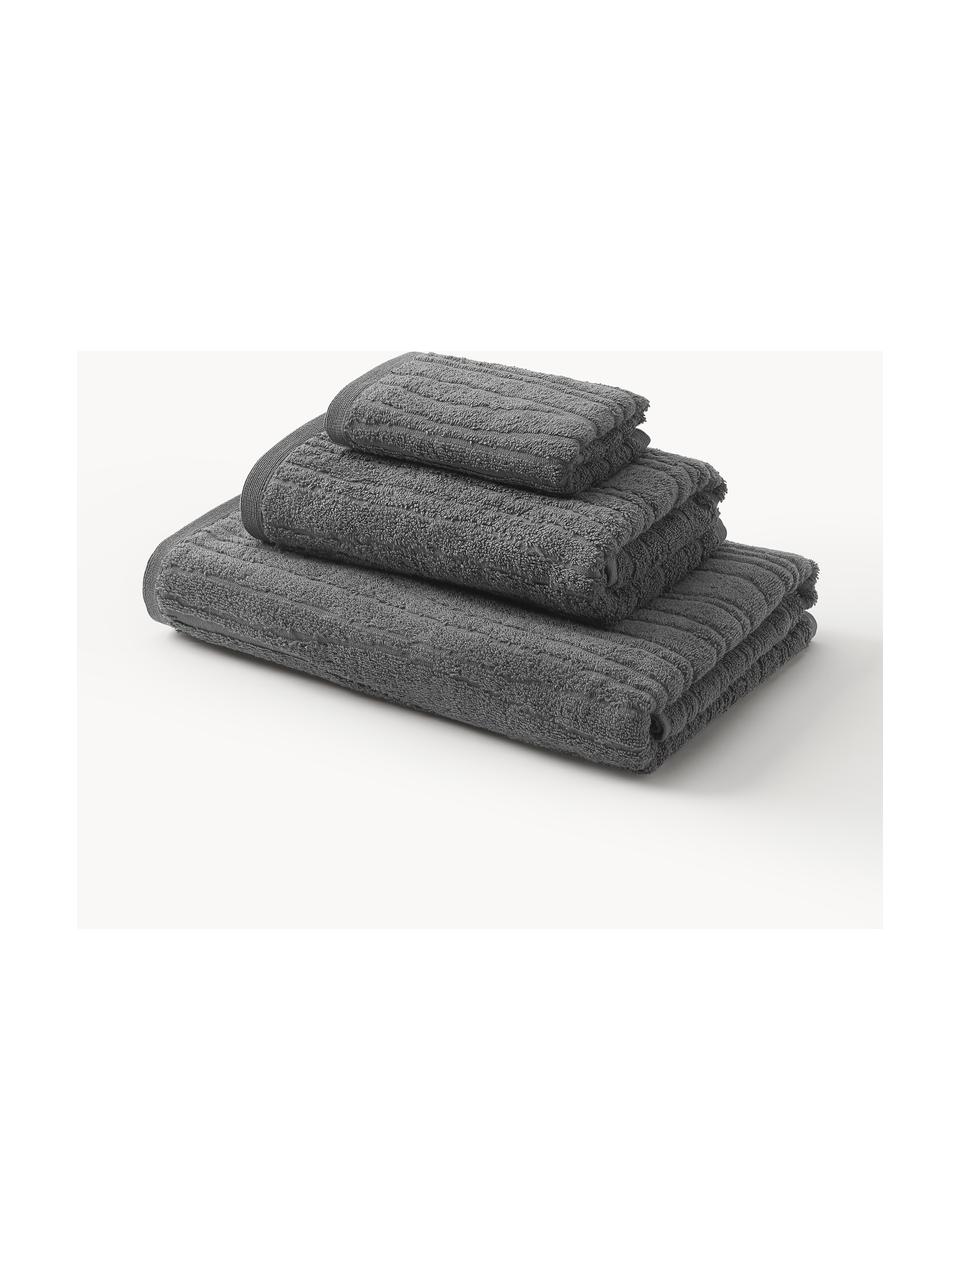 Set de toallas de algodón Audrina, tamaños diferentes, Gris oscuro, Set de 3 (toalla tocador, toalla lavabo y toalla ducha)